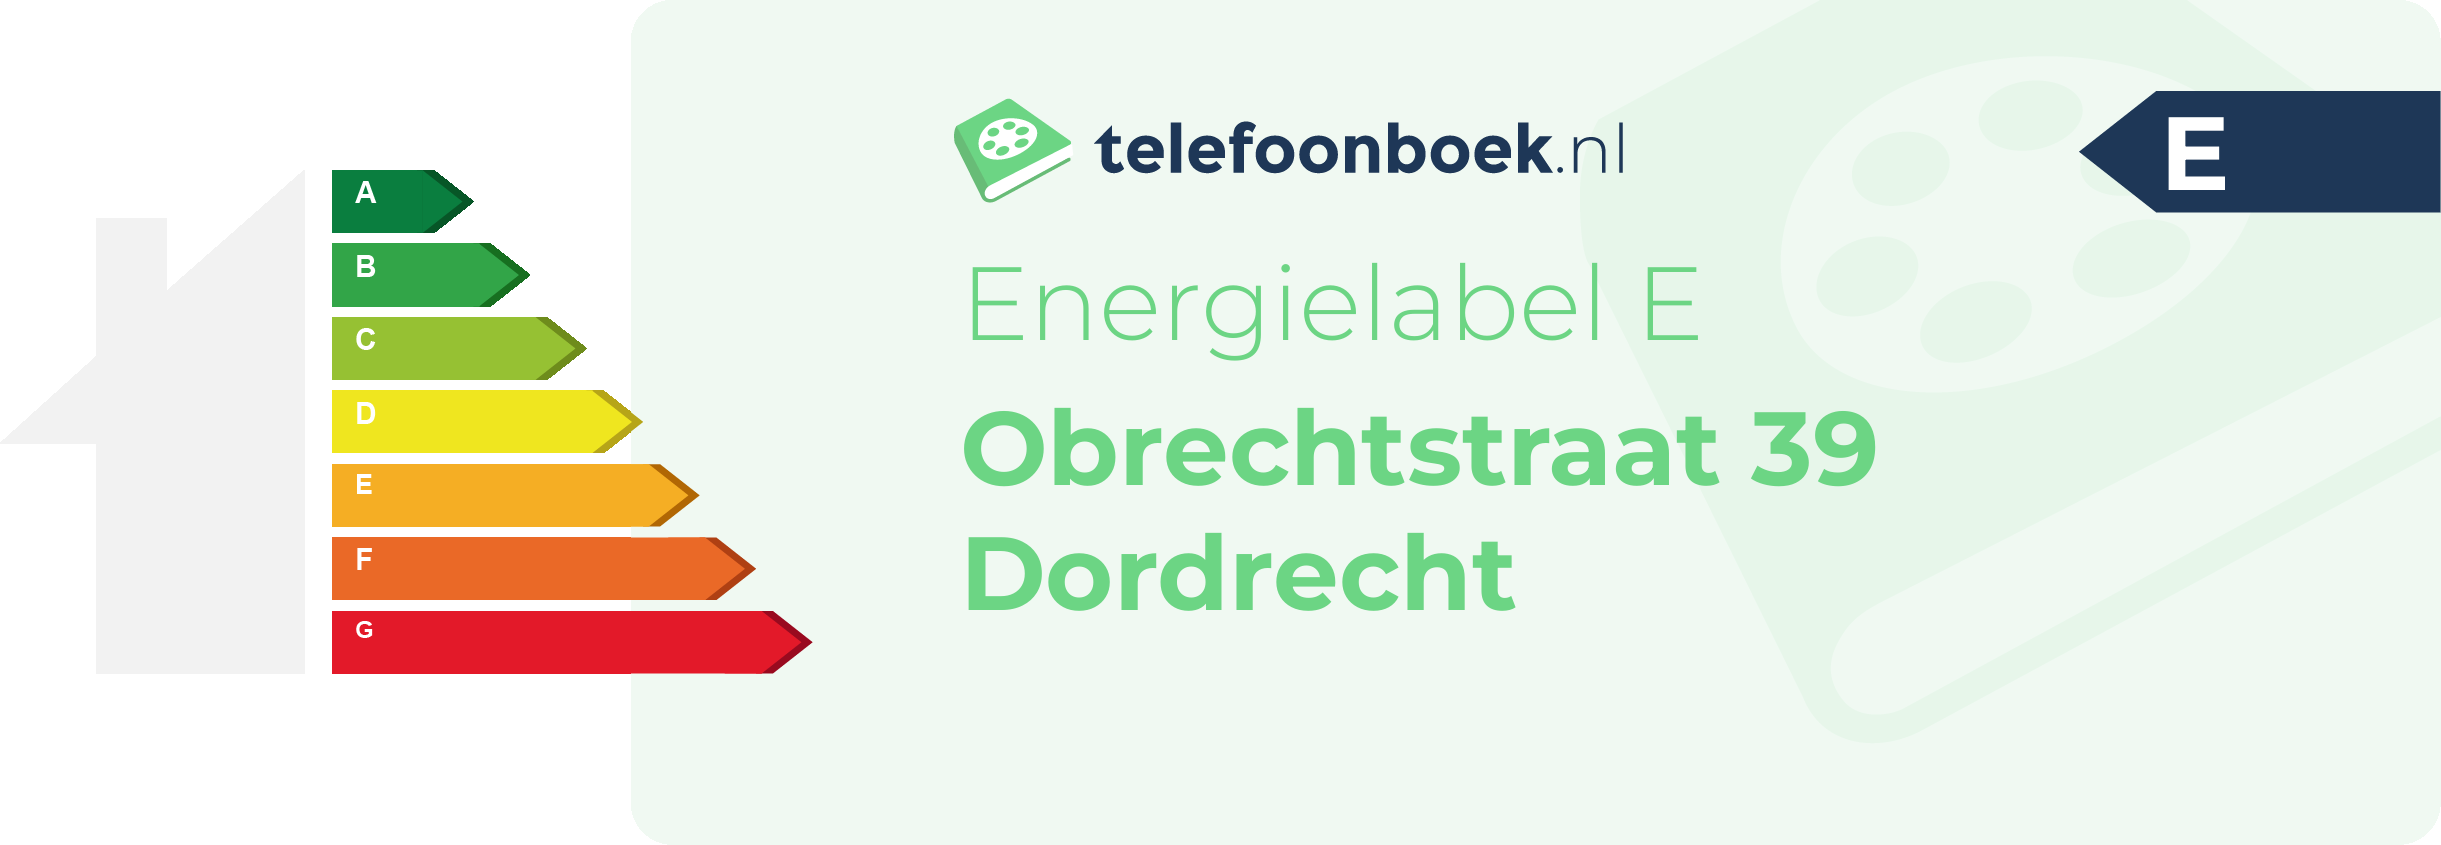 Energielabel Obrechtstraat 39 Dordrecht